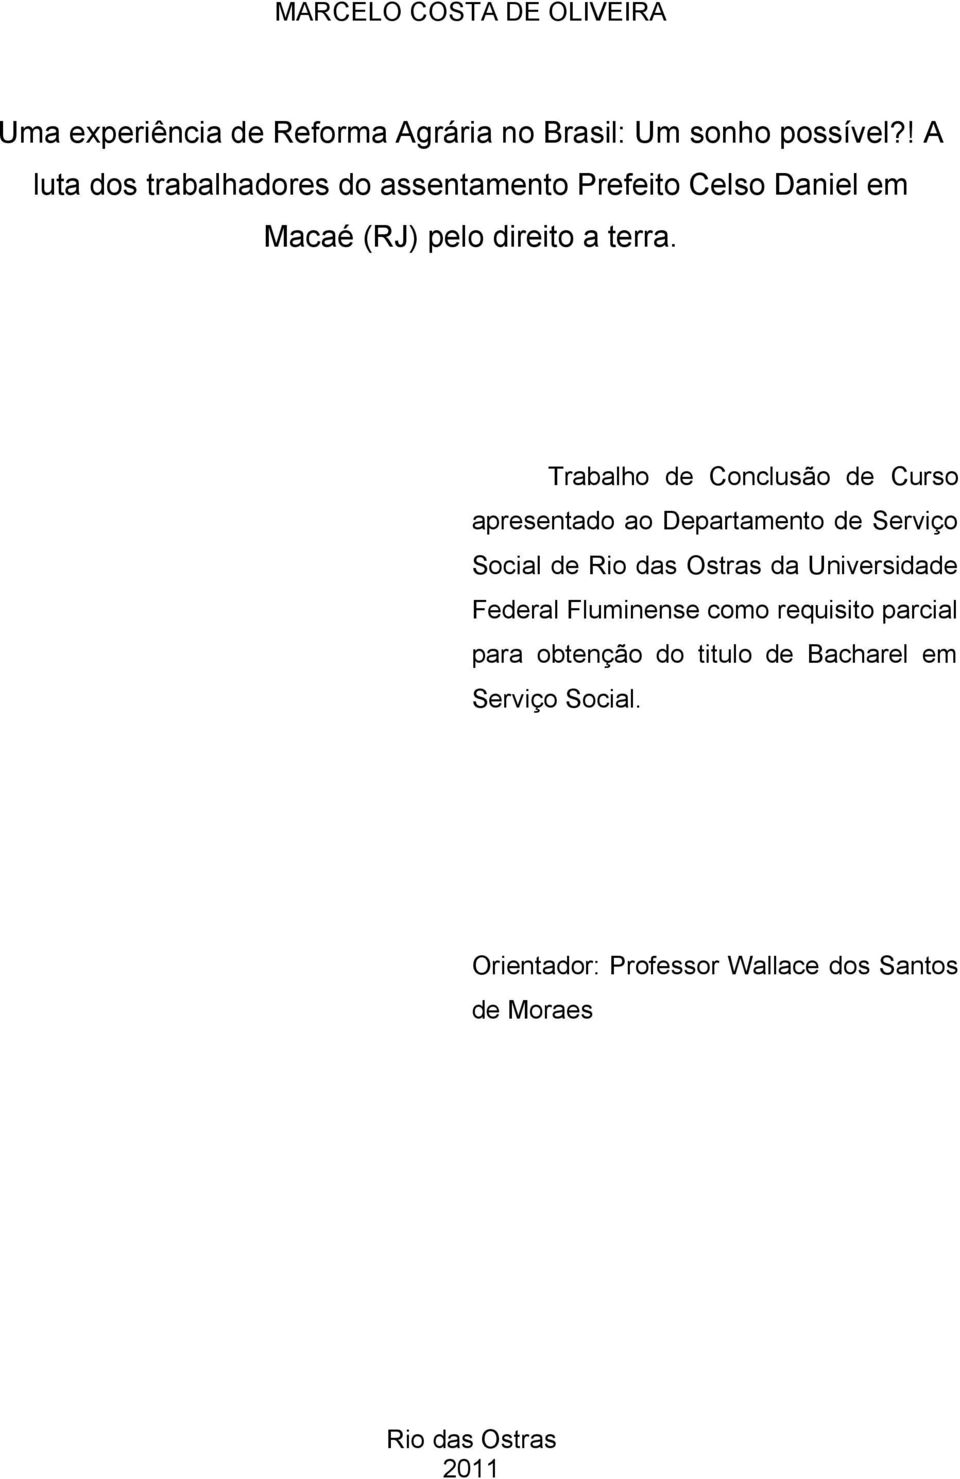 Trabalho de Conclusão de Curso apresentado ao Departamento de Serviço Social de Rio das Ostras da Universidade